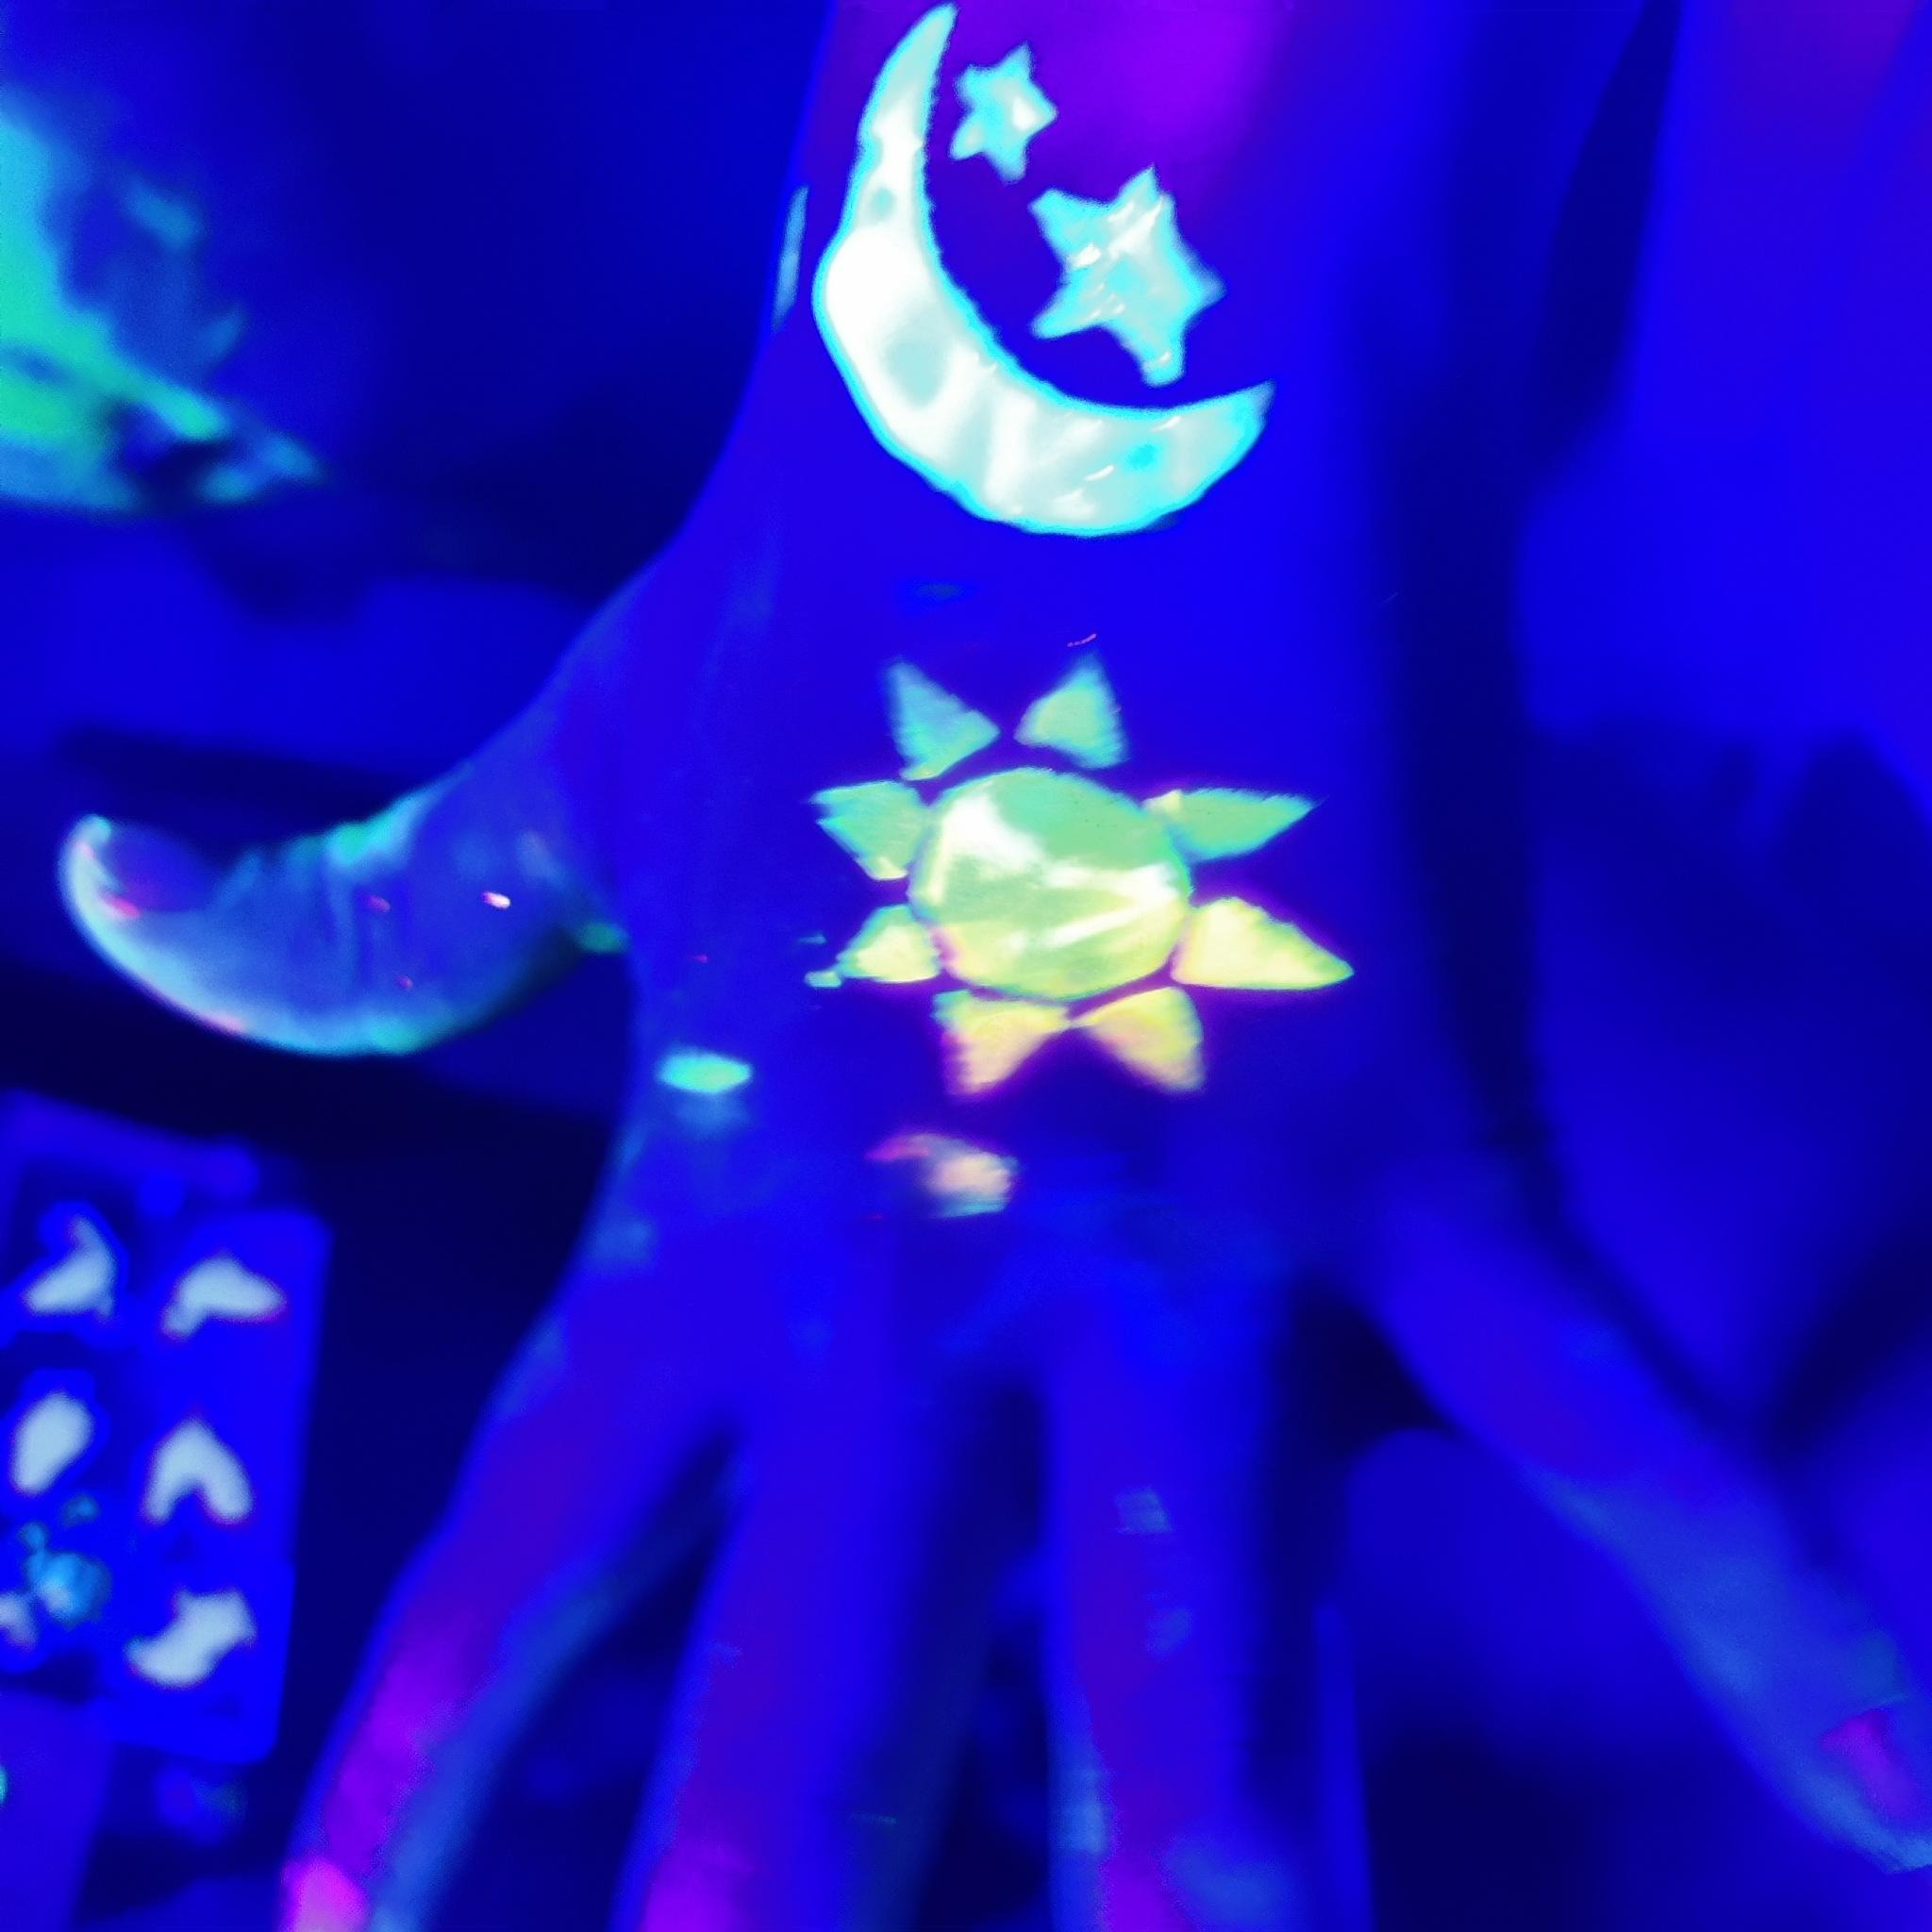 Rücken einer Hand mit fluroszierender Farbe. Eine gelbe Sonne auf dem Handrücken, eine Mondsichel und zwei Sterne auf dem Handgelenk. Im Hintergrund vereinzelt fluorszierende Farbflecken und Formen. Das Foto ist mit Schwarz-Licht aufgenommen, so dass die fluroszierenden Farben hervorstechen und der Rest diffus und dunkel ist.